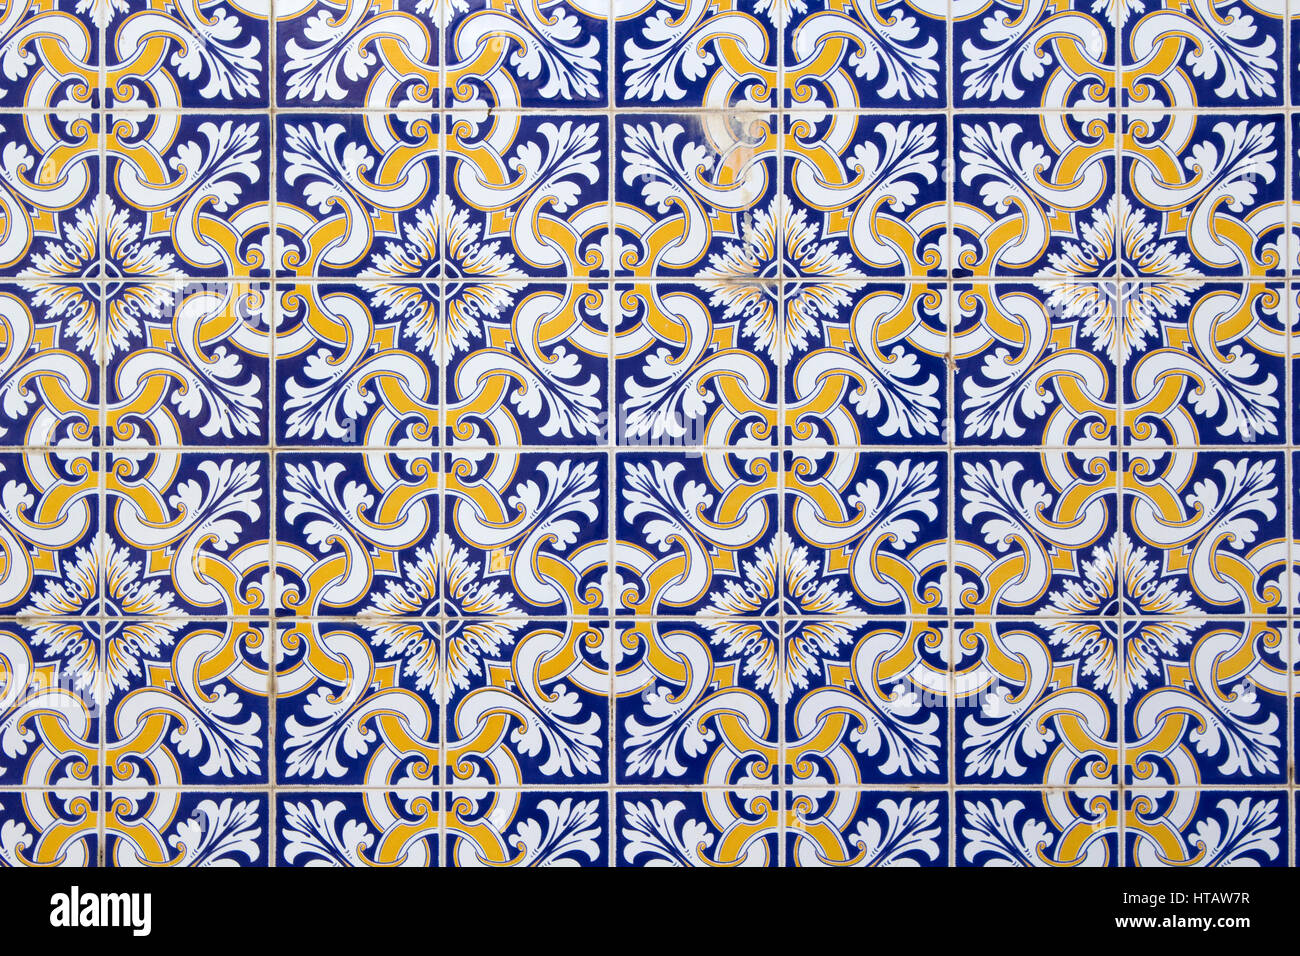 Contexte des savoirs traditionnels bleu, blanc et or carreaux portugais Banque D'Images